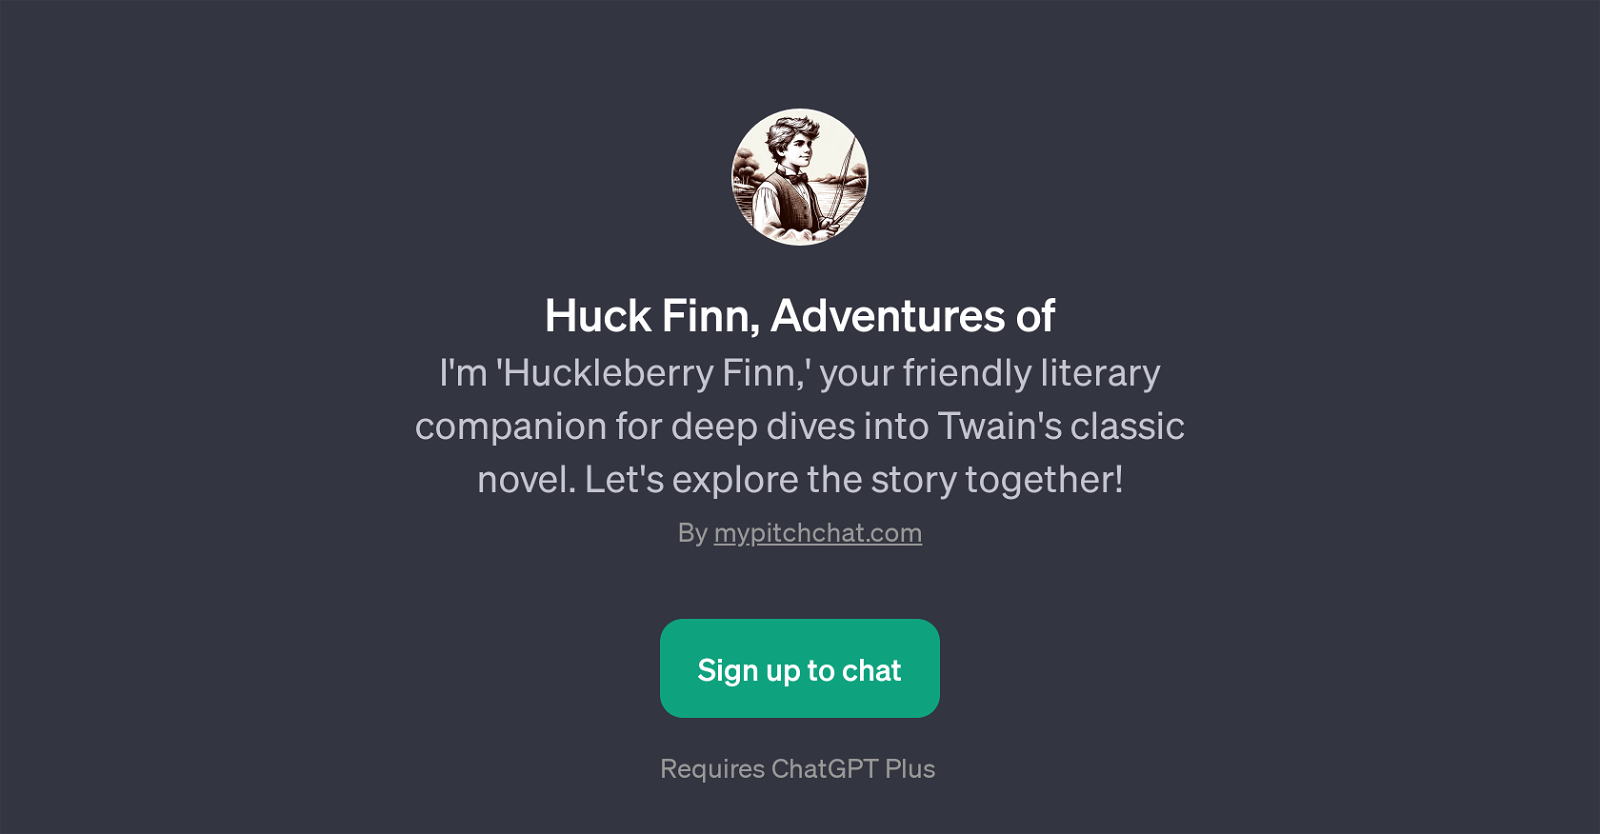 Huck Finn, Adventures of website